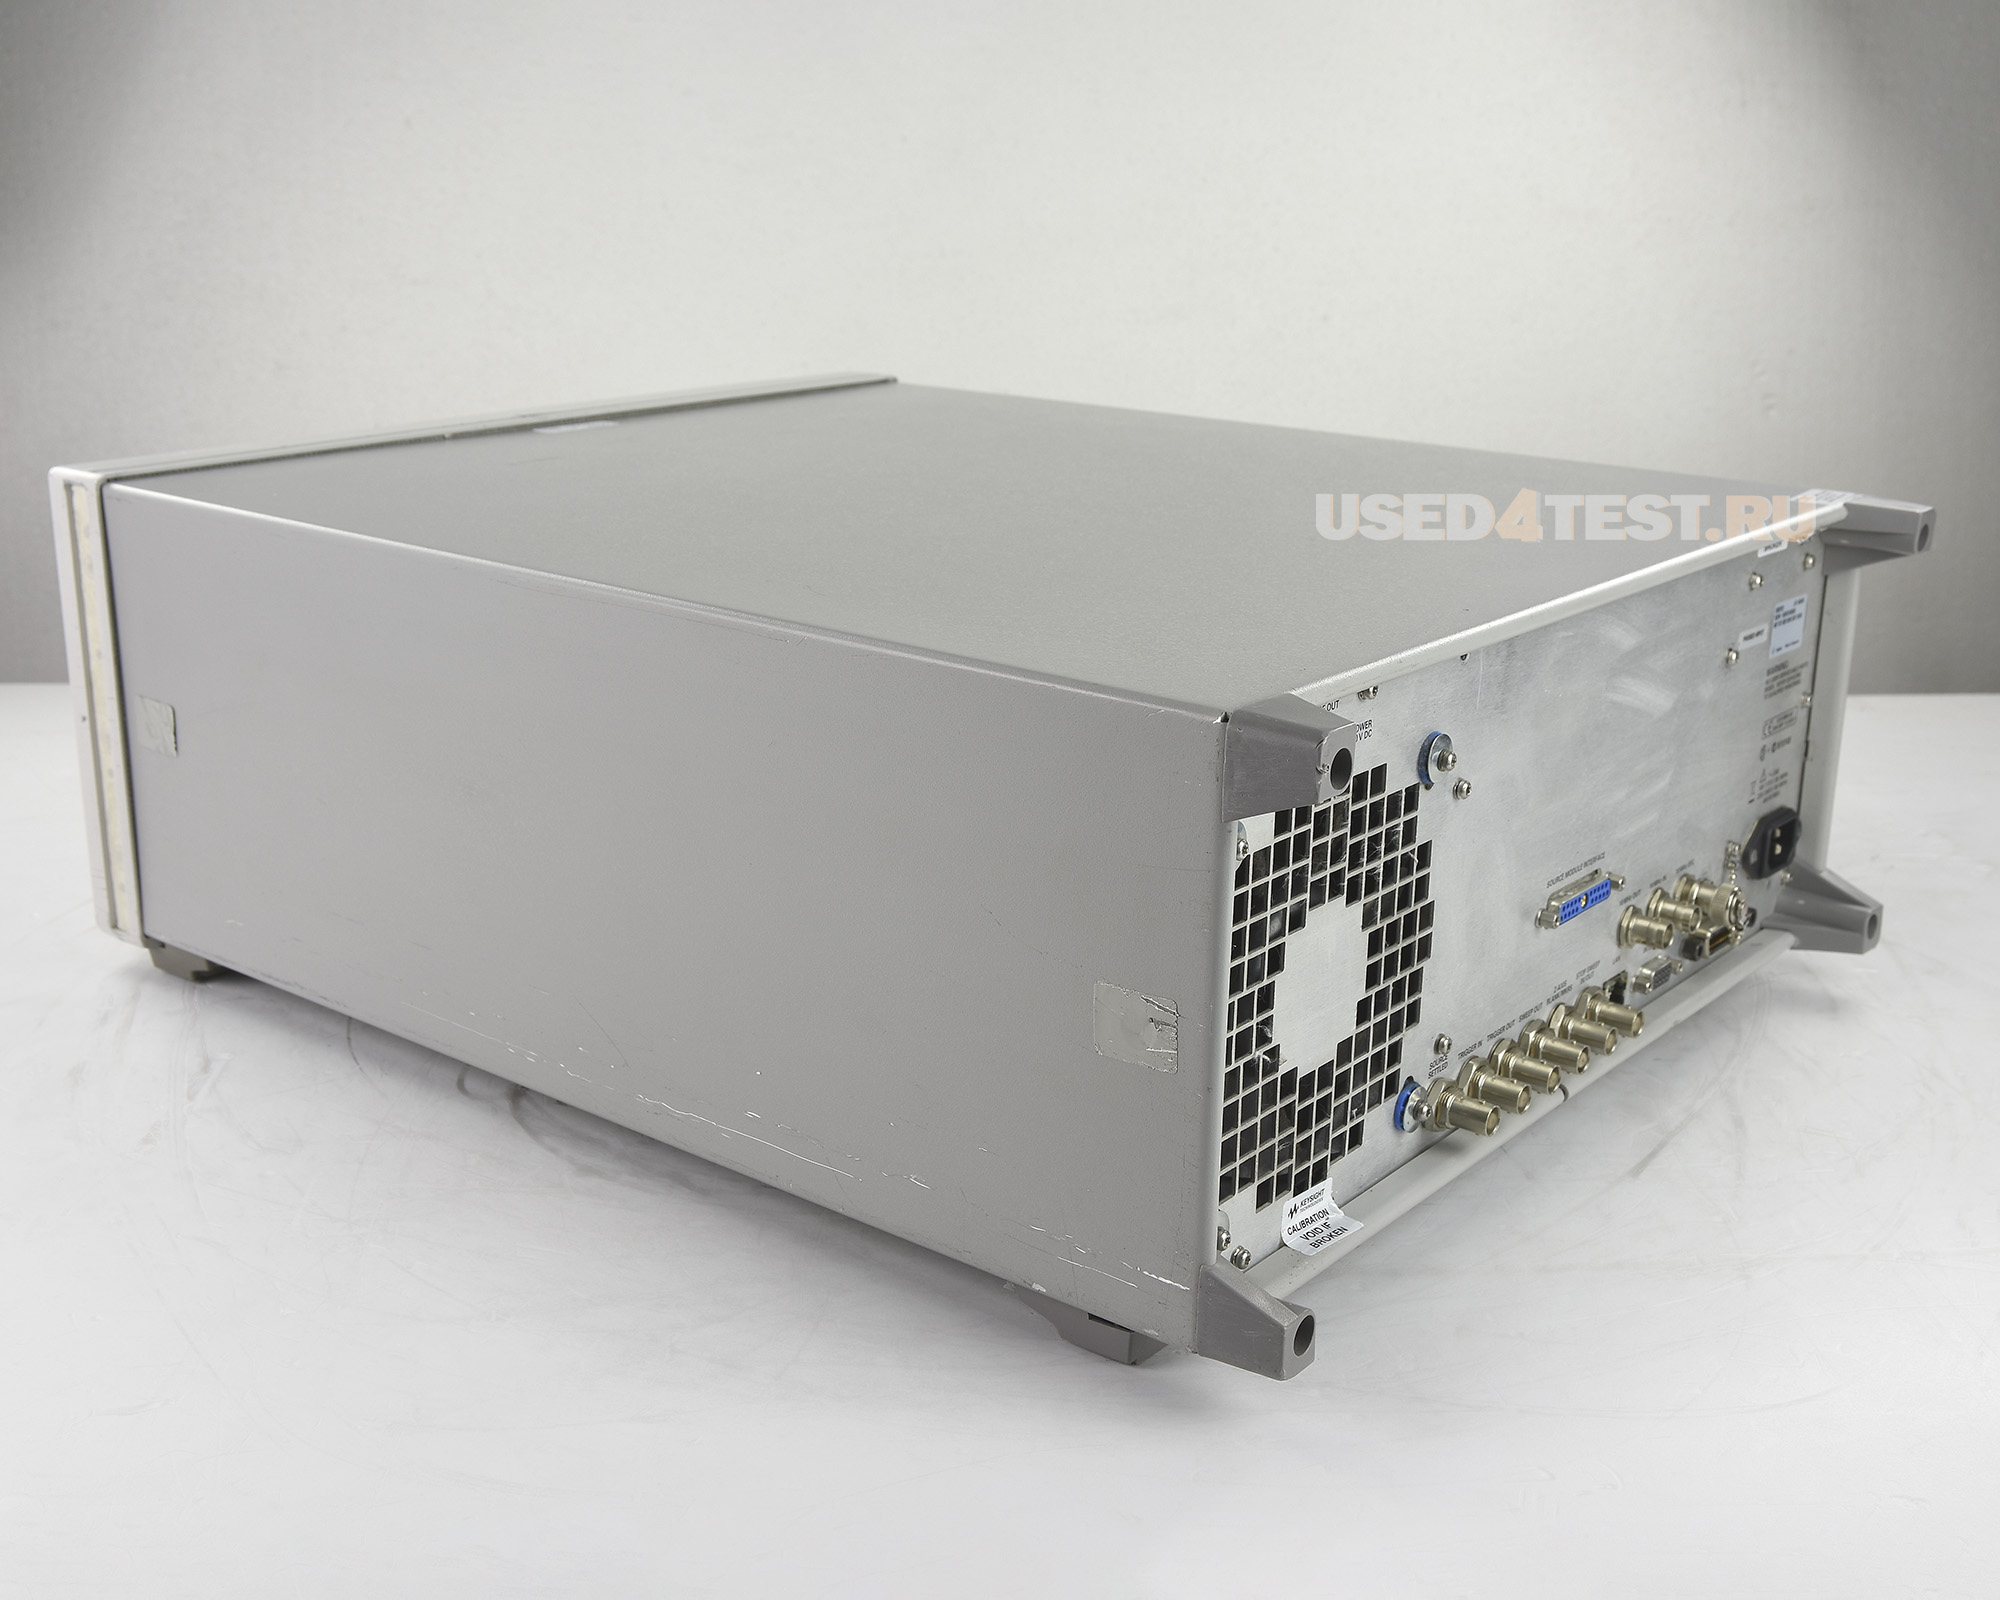 Генератор сигналов Agilent E8257D серия PSGс диапазоном от 100 кГц до 20 ГГц


 В комплекте с опциями: 

 

	007 — Плавное (аналоговое) свипирование
	1E1 — Выходной ступенчатый аттенюатор
	520 — Диапазон частот от 250 кГц до 20 ГГц
H1K — Расширение диапазона до 100 кГц
UNR — Улучшенные характеристики фазового шума
	UNT — Аналоговая модуляция: AM, ЧМ, ФМ и НЧ выход
	UNW — Модуляция короткими импульсами
